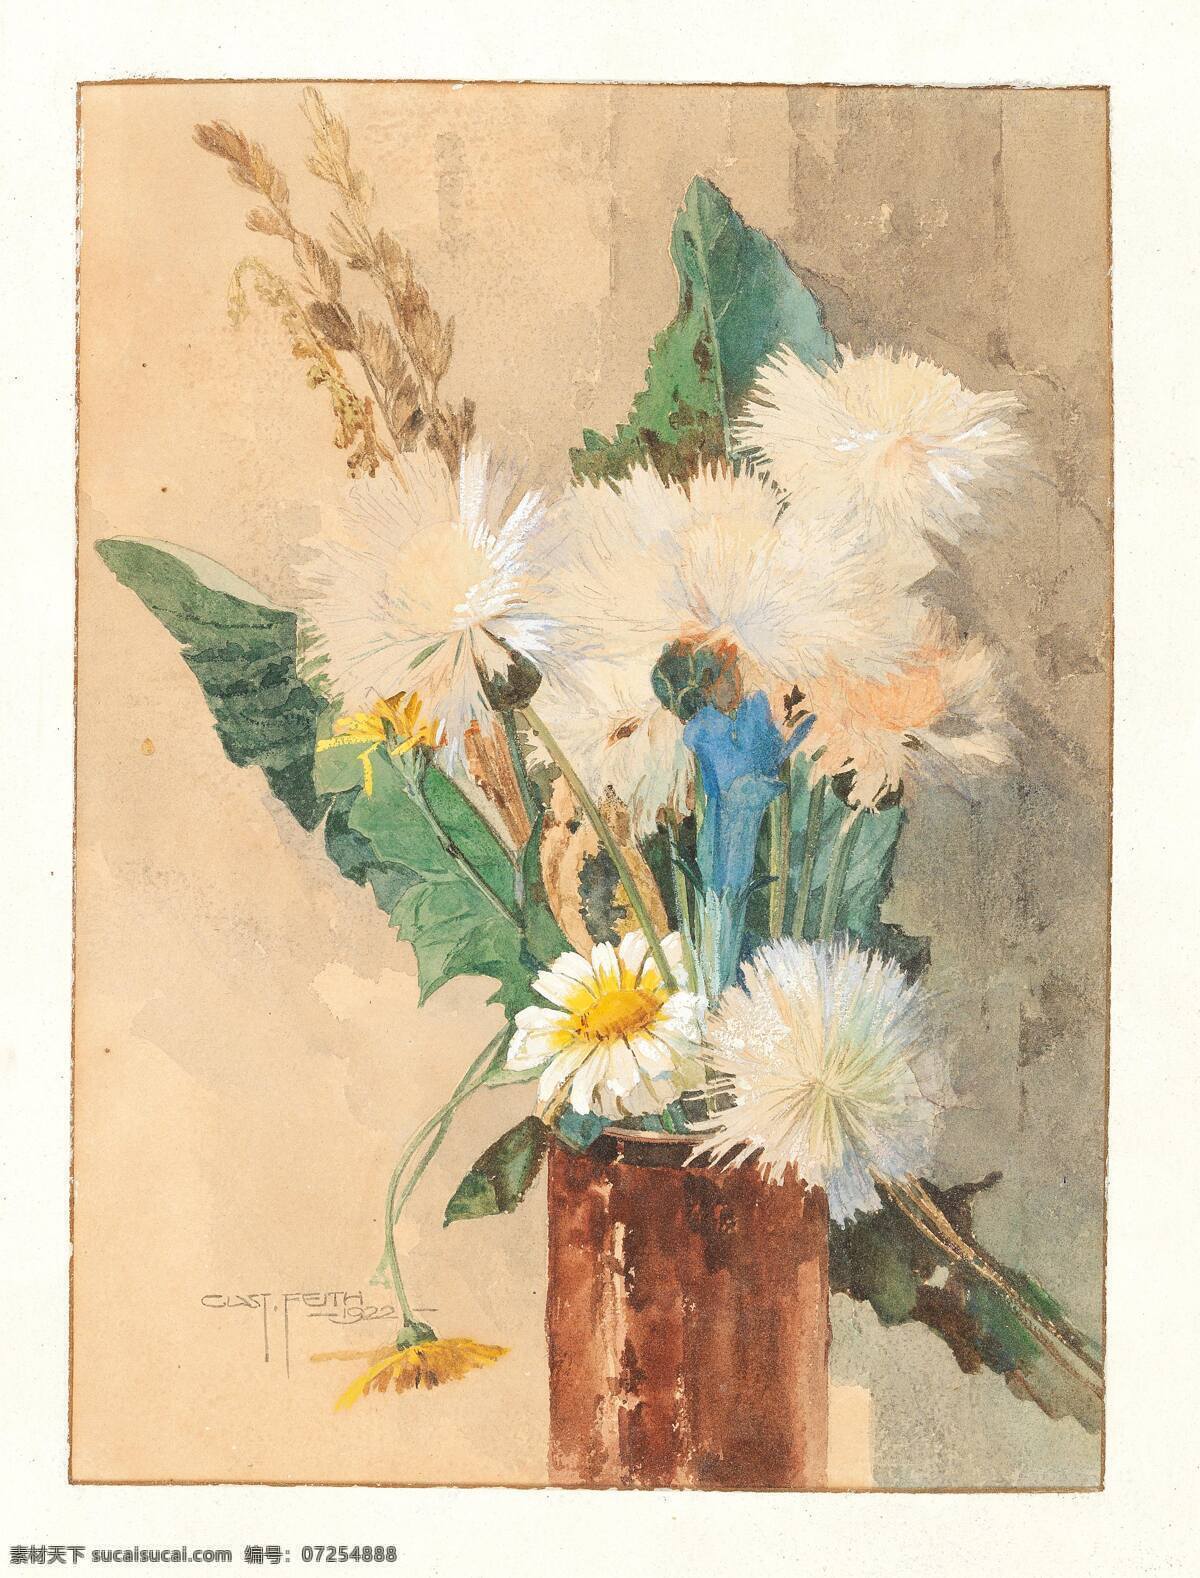 古斯塔夫 费斯作品 奥地利画家 玻璃瓶 草甸花 白色 雏菊 世纪 水彩画 文化艺术 绘画书法